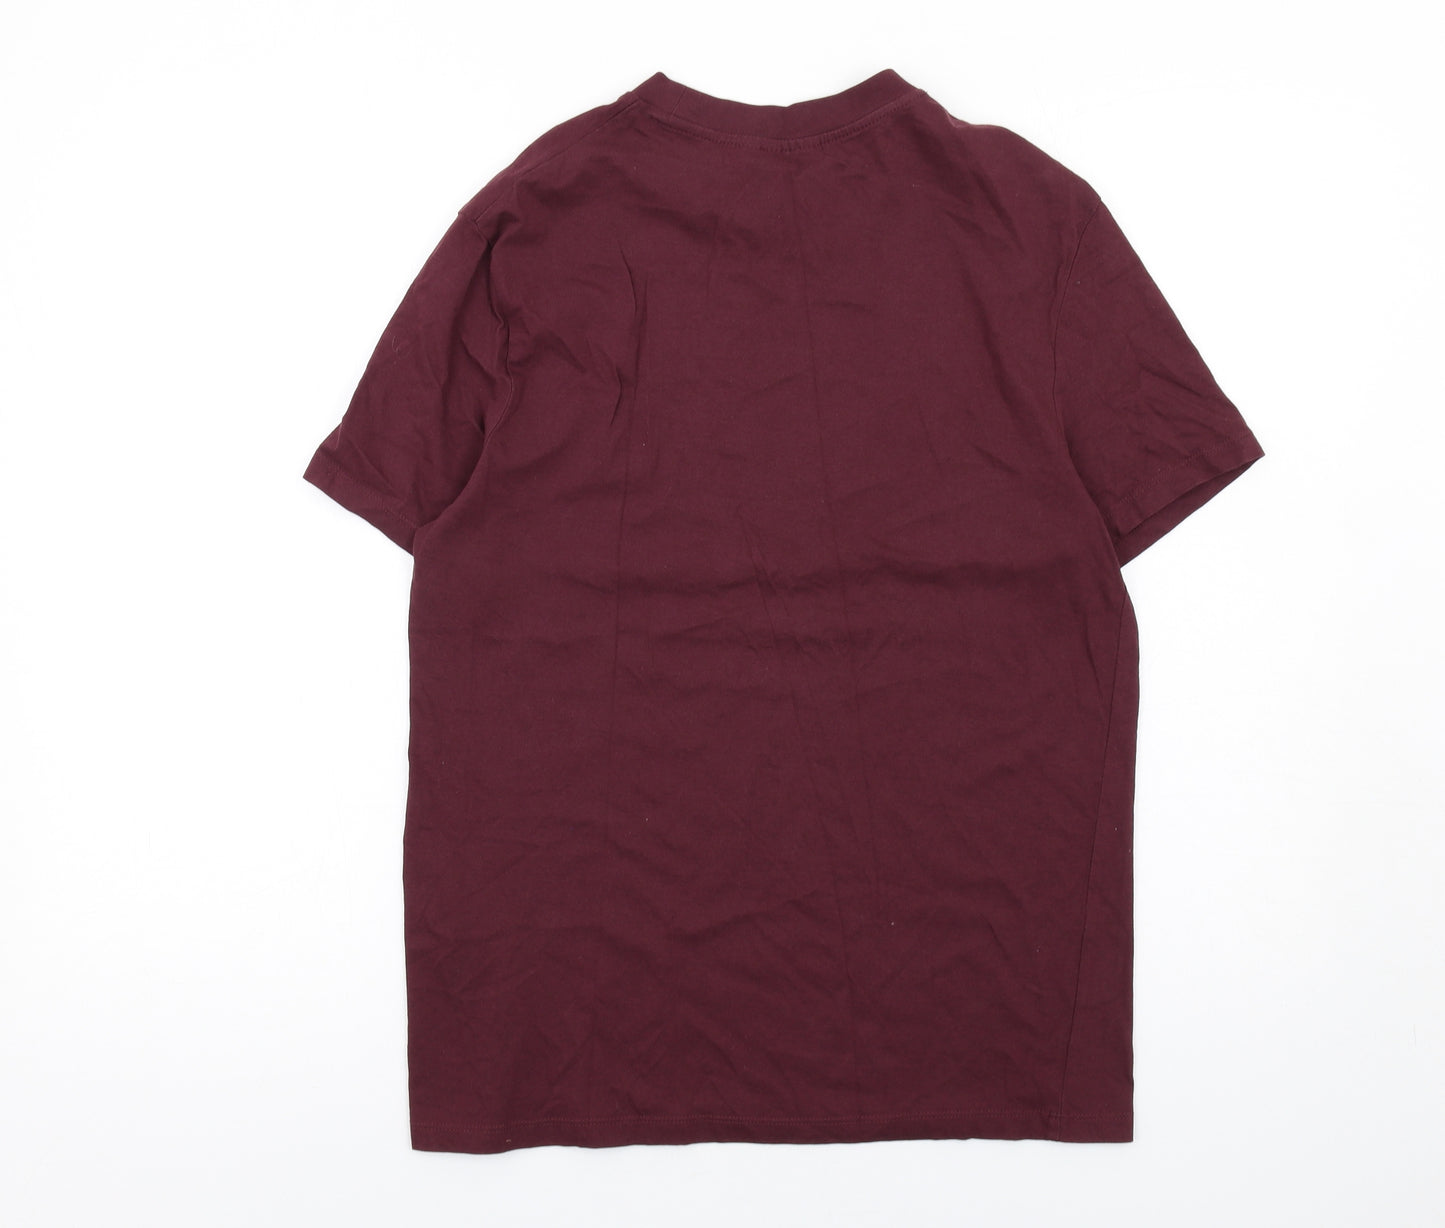 ASOS Mens Purple Cotton T-Shirt Size S Crew Neck